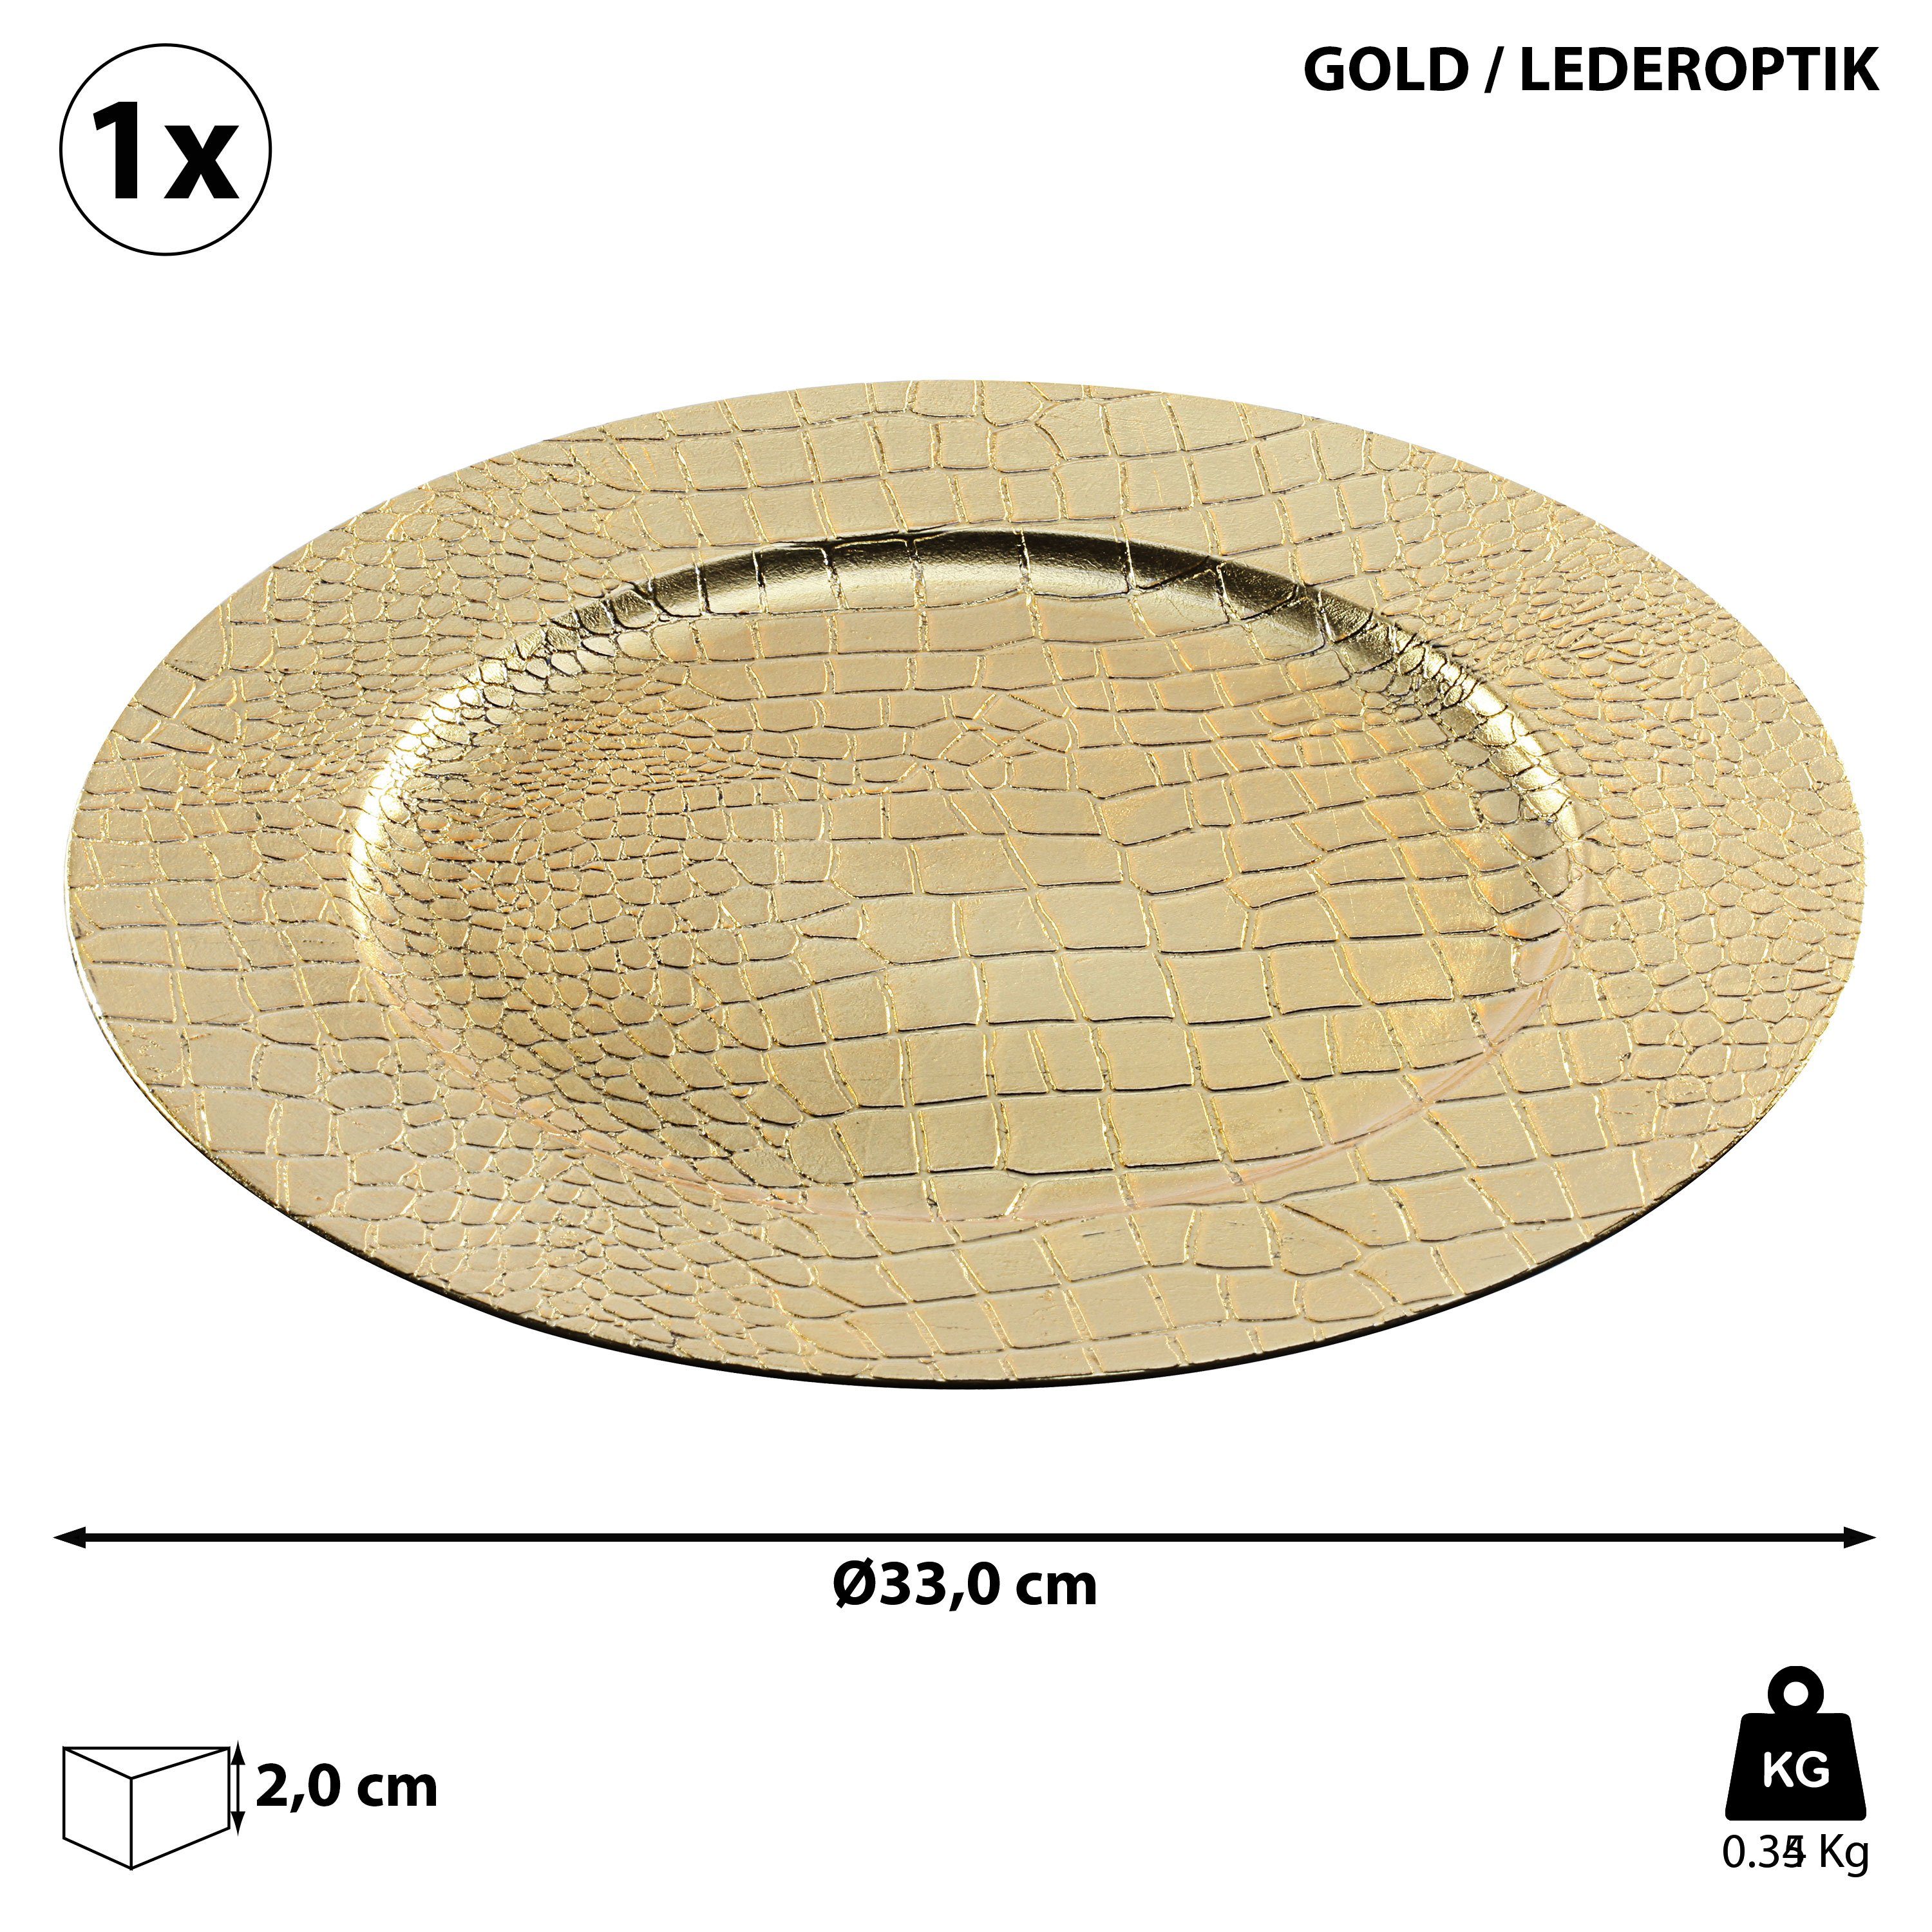 Dekoteller Lederoptik 'Leather' gold Tablett 33cm Teller 1x Platzteller CEPEWA Ø Lederoptik Dekoteller PVC gold 33cm